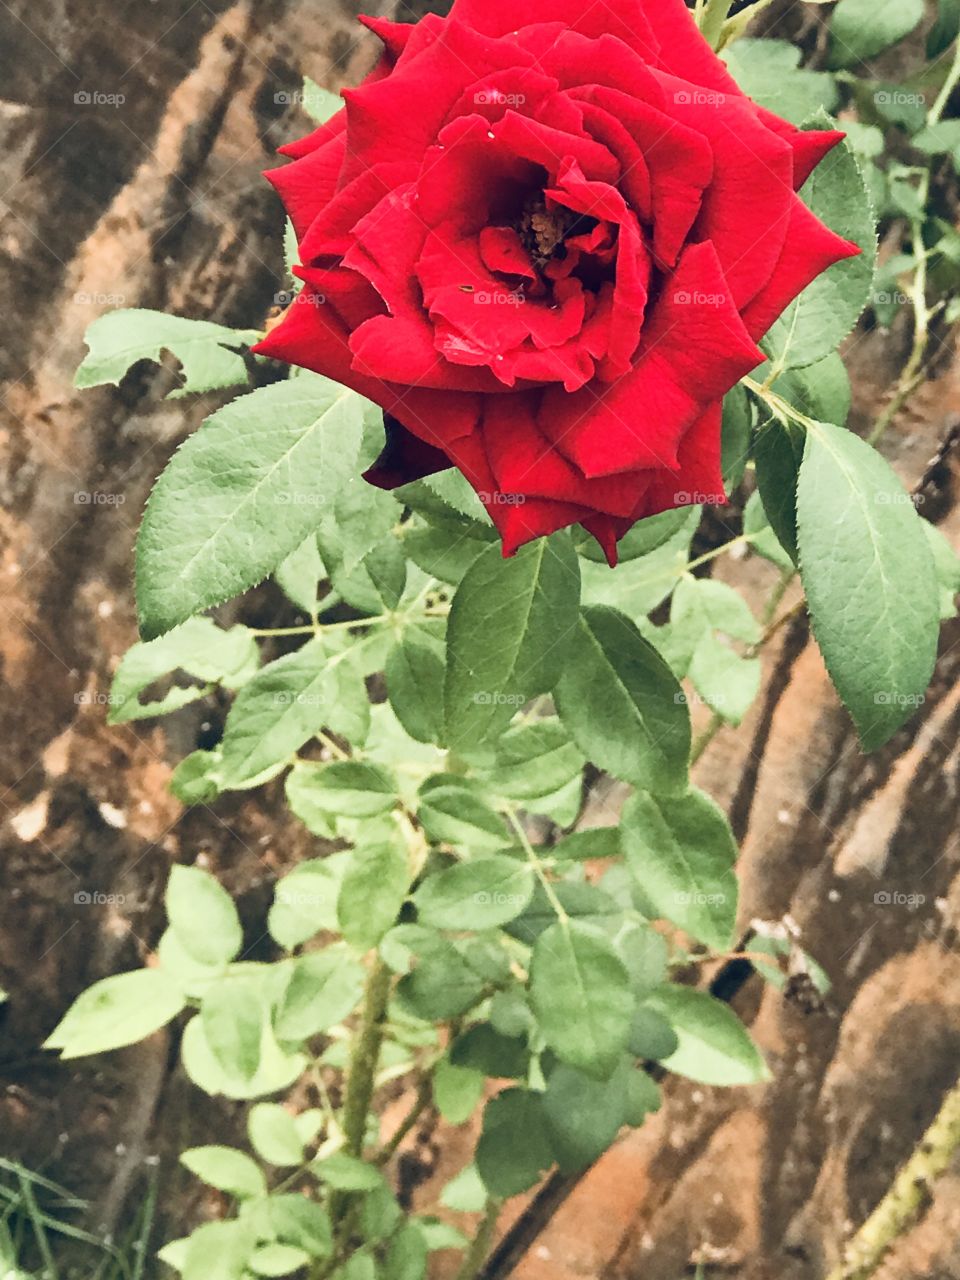 A rosa mais bonita do meu jardim!